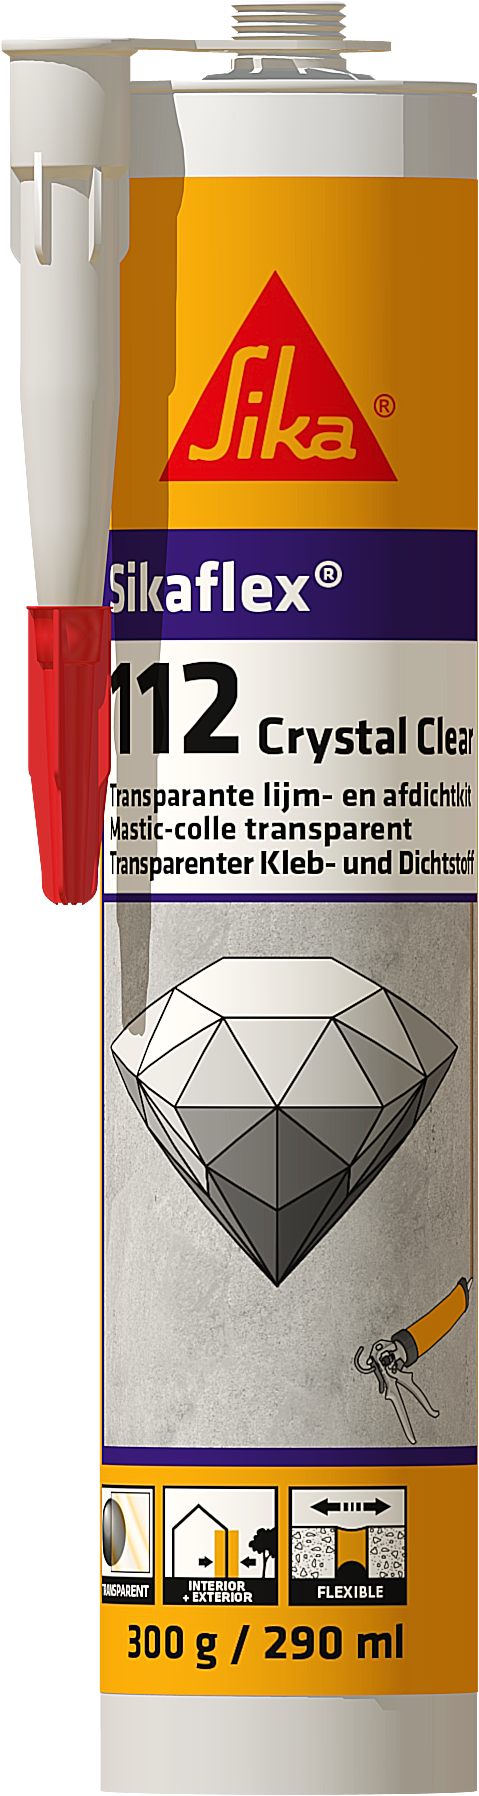 Sikaflex crystal clear